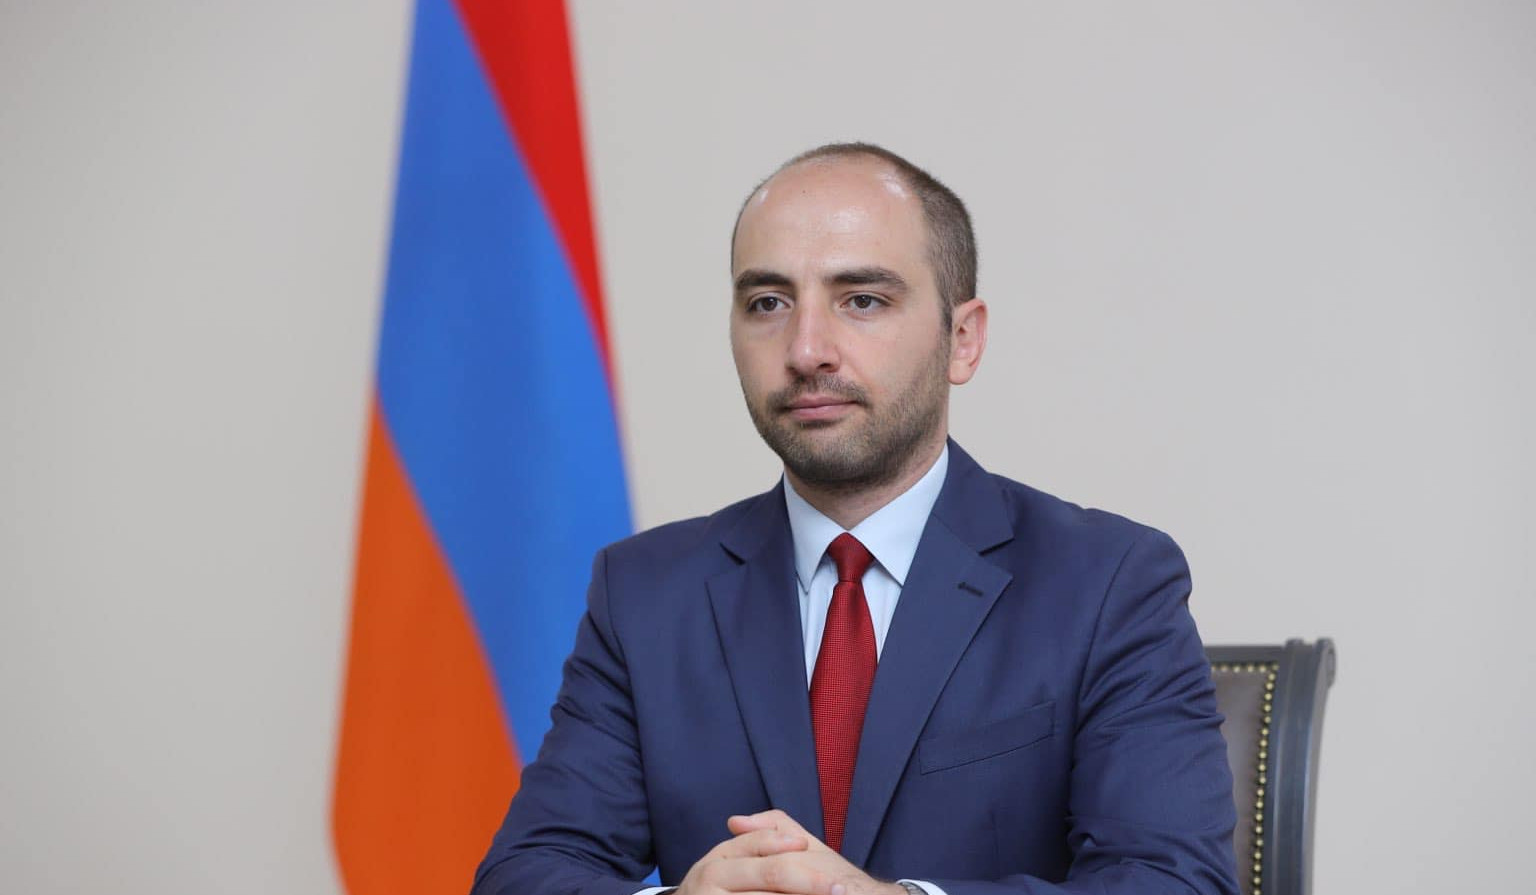 Այս պահին Հայաստանի և Թուրքիայի հատուկ բանագնացների հանդիպման վերաբերյալ որևէ պայմանավորվածություն չկա. Վահան Հունանյան